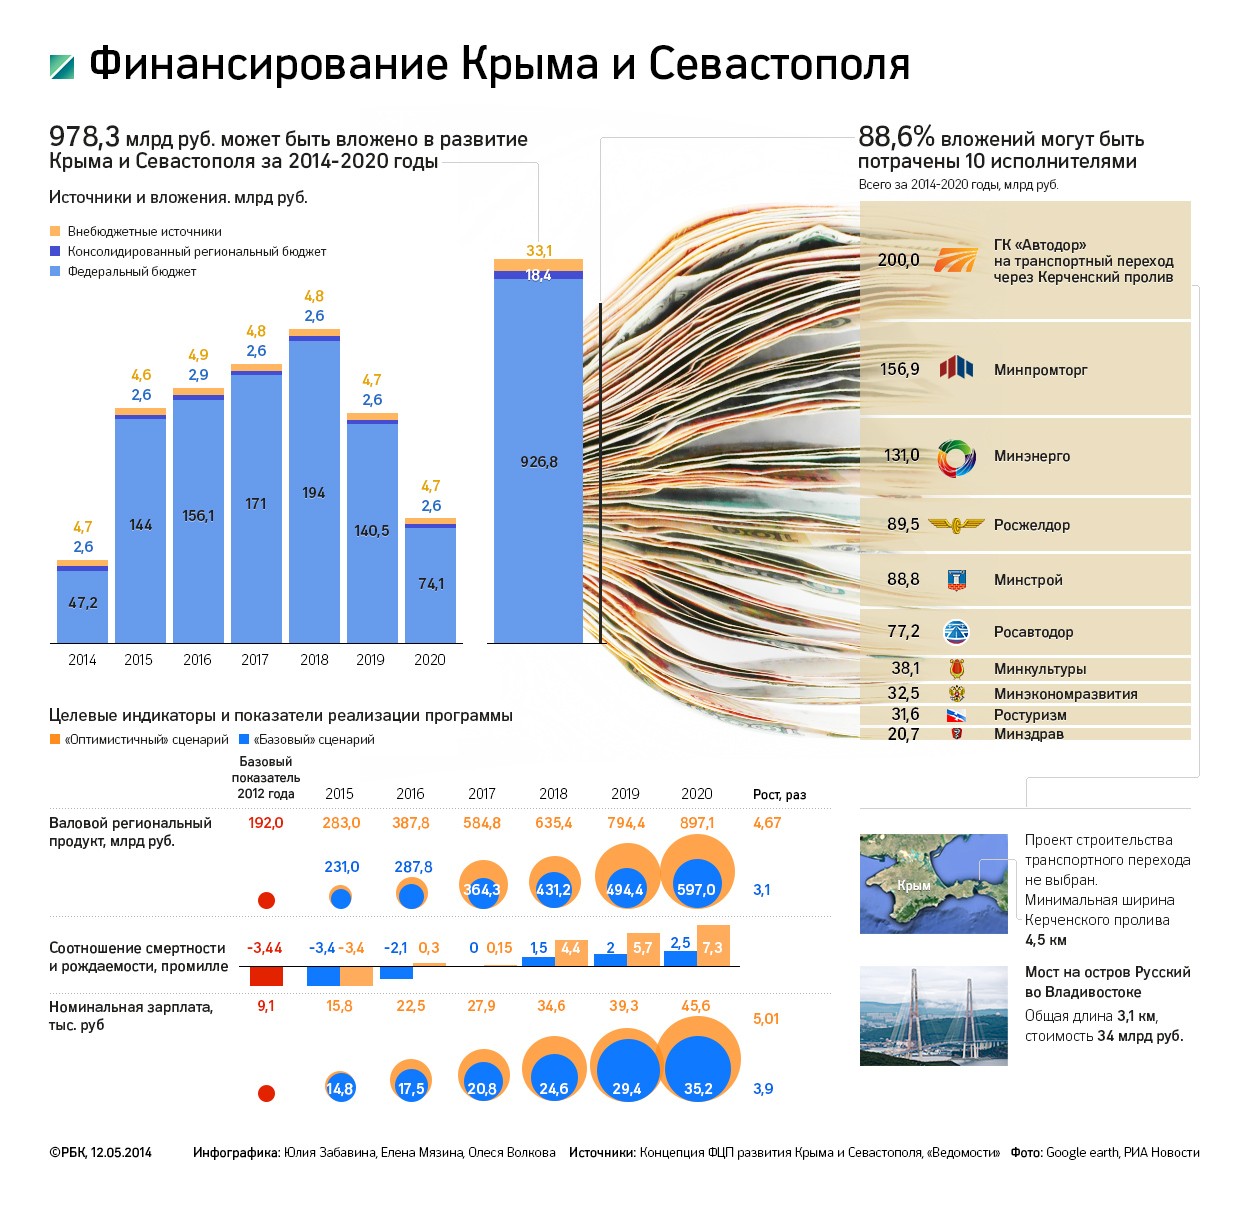 Правительство переписывает бюджет ради Крыма и регионов